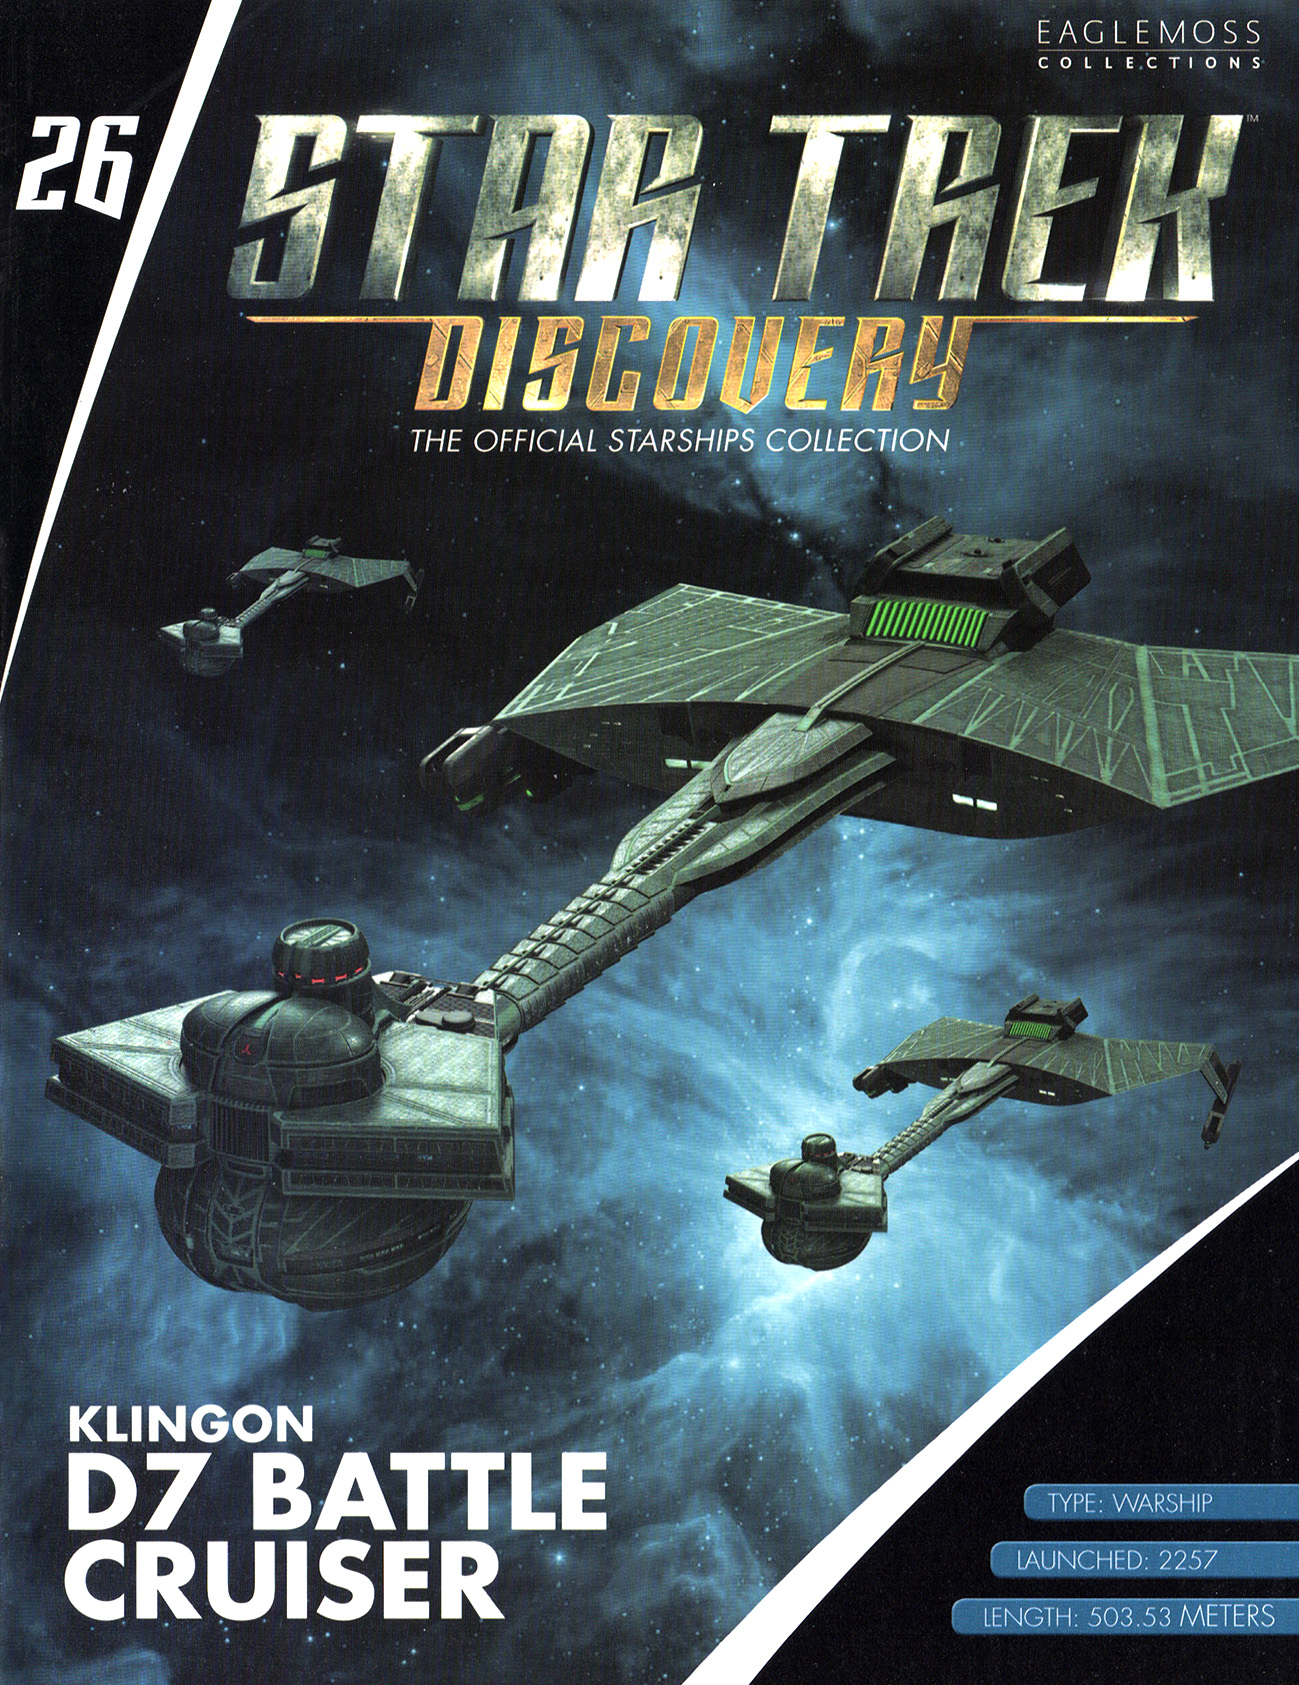 Eaglemoss Star Trek Starships Discovery Issue 26